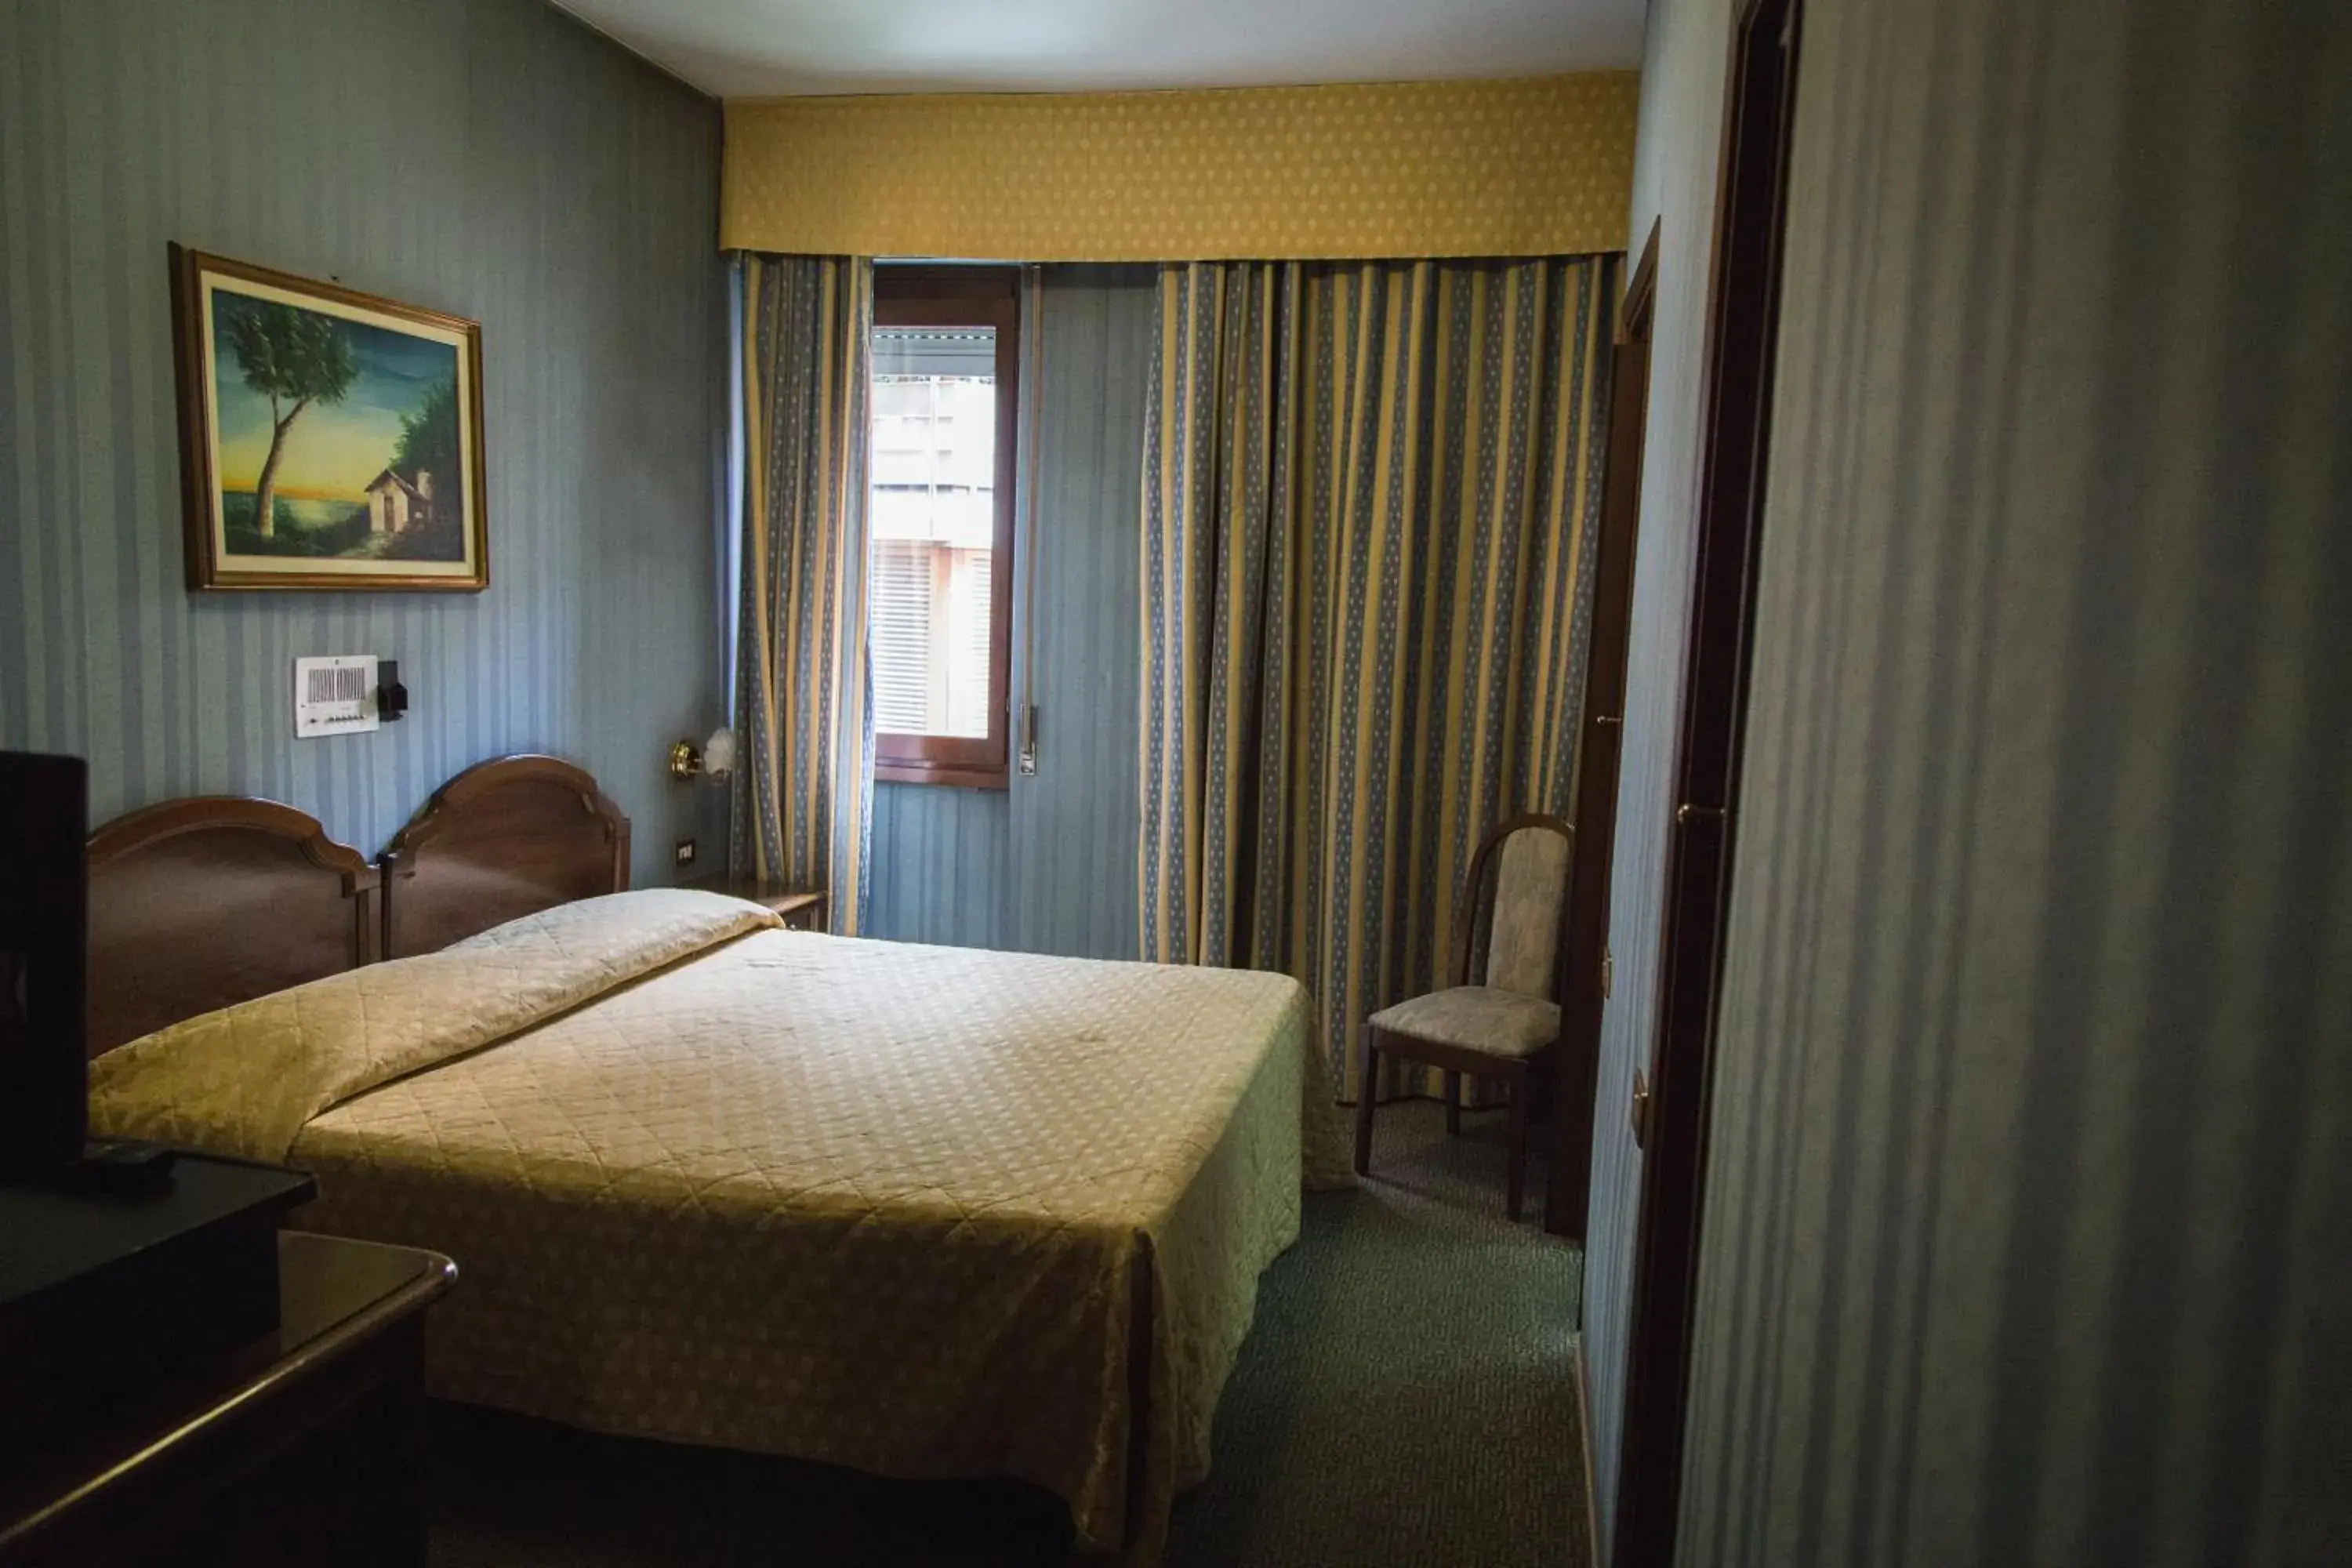 Day, Room Photo in Hotel Accursio